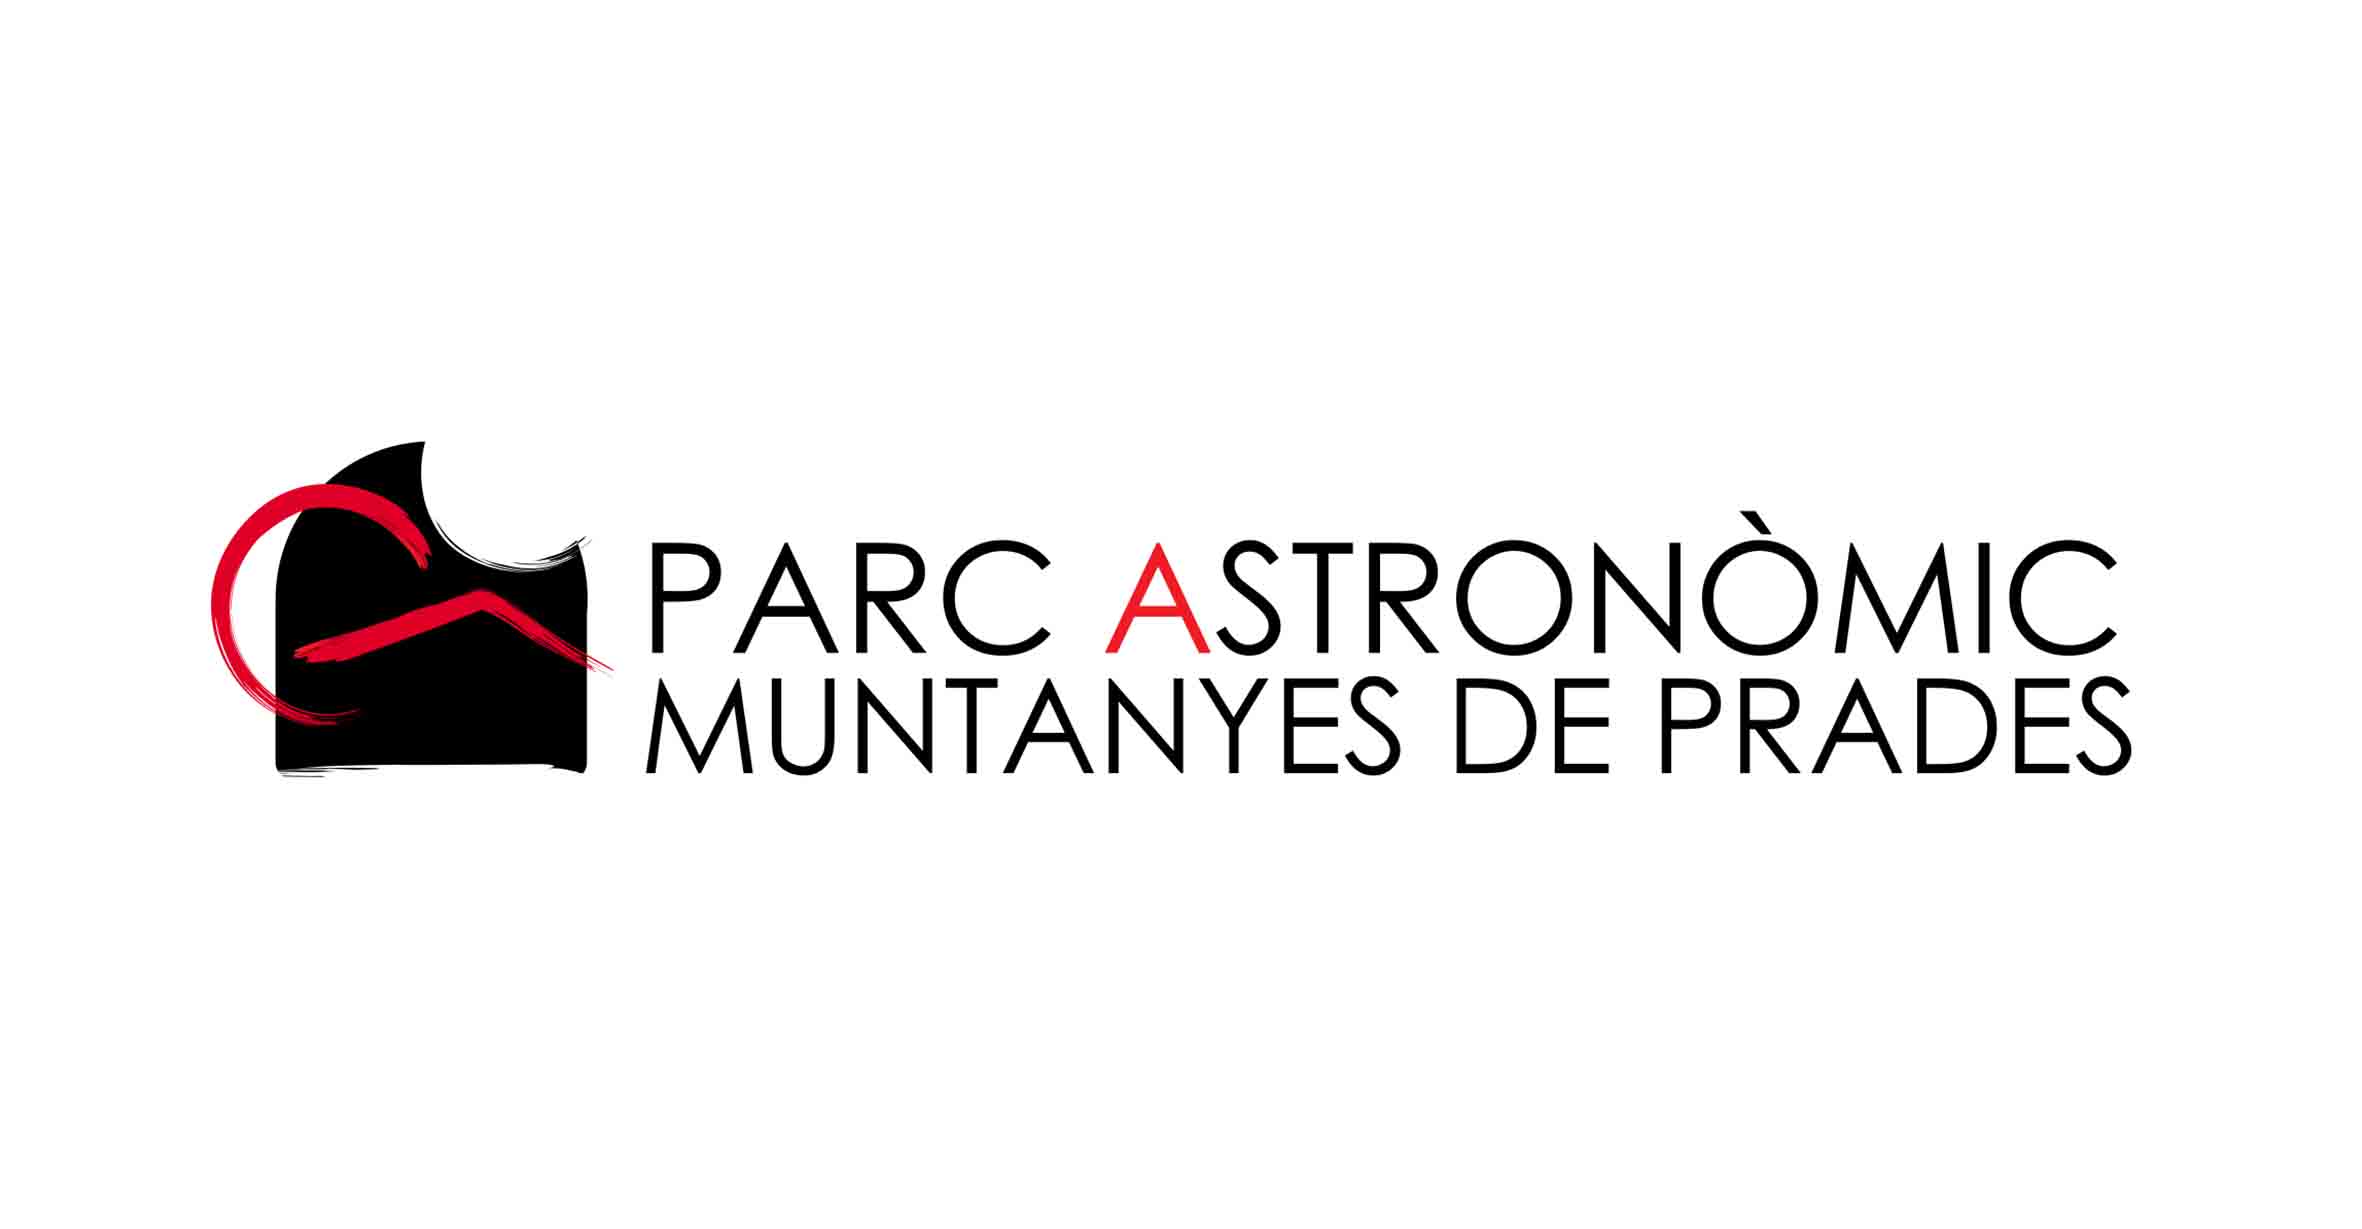 Parc Astronòmic Muntanyes de Prades